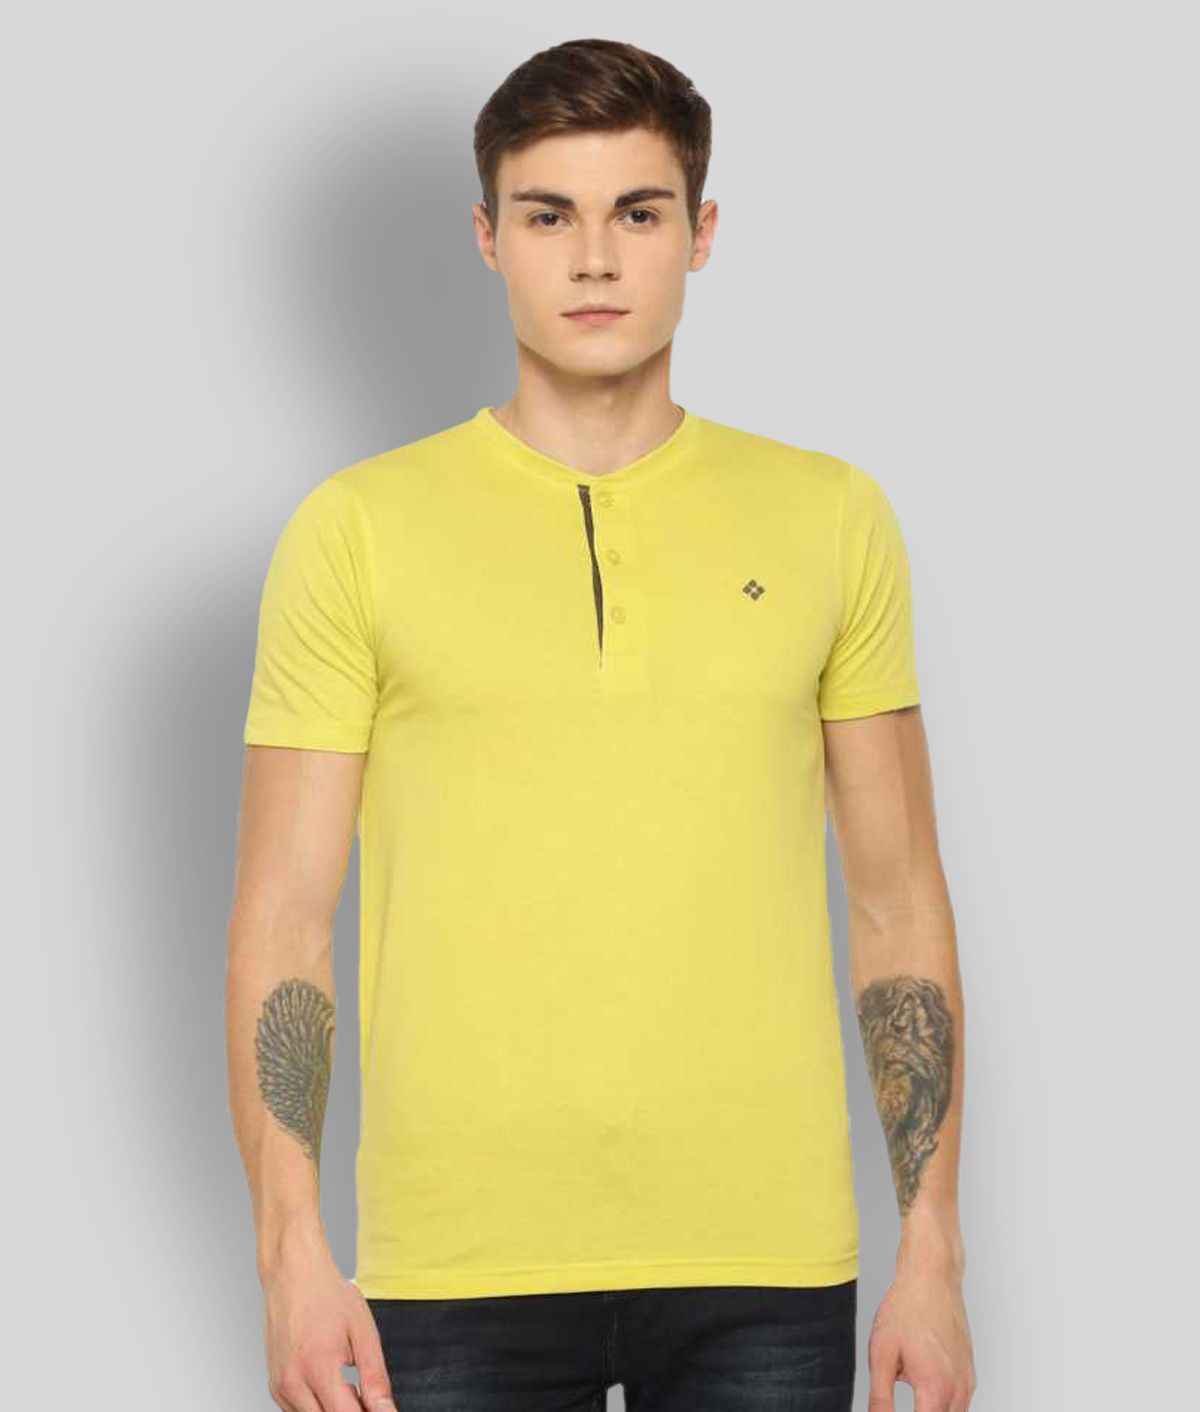     			Dollar - Yellow Cotton Blend Regular Fit Men's T-Shirt ( Pack of 1 )